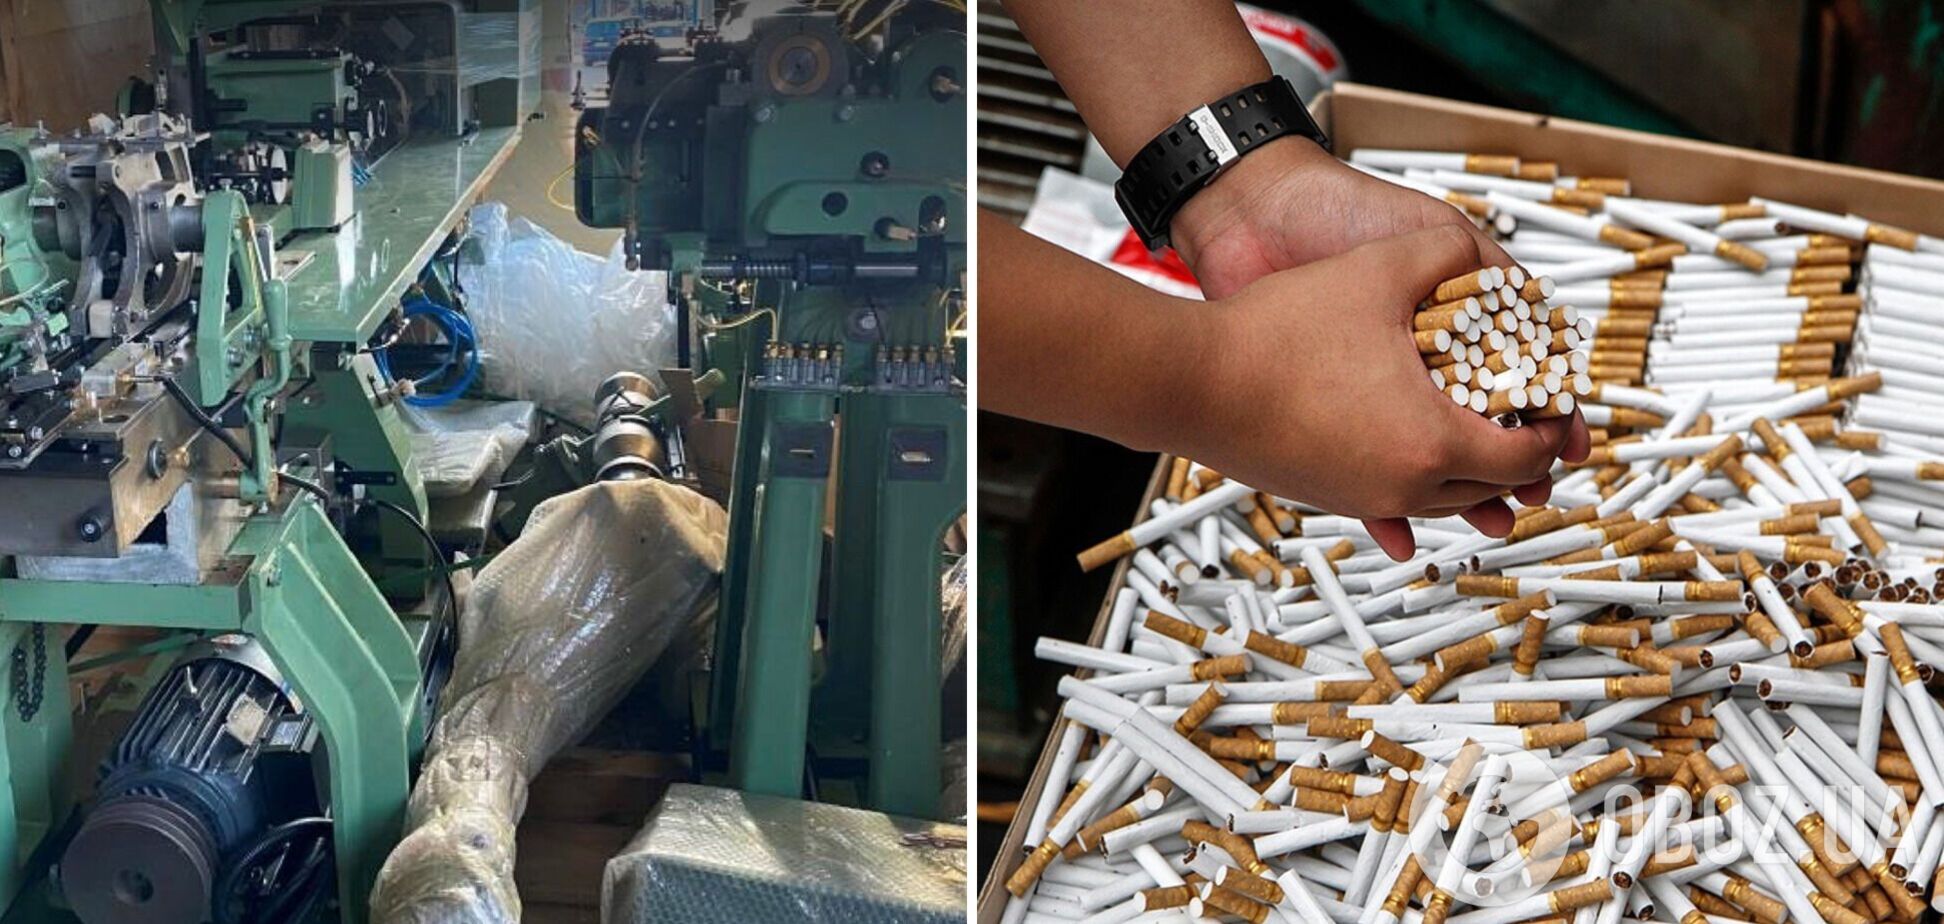 Стоимость оборудования для производства сигарет оценили в 10 млн грн